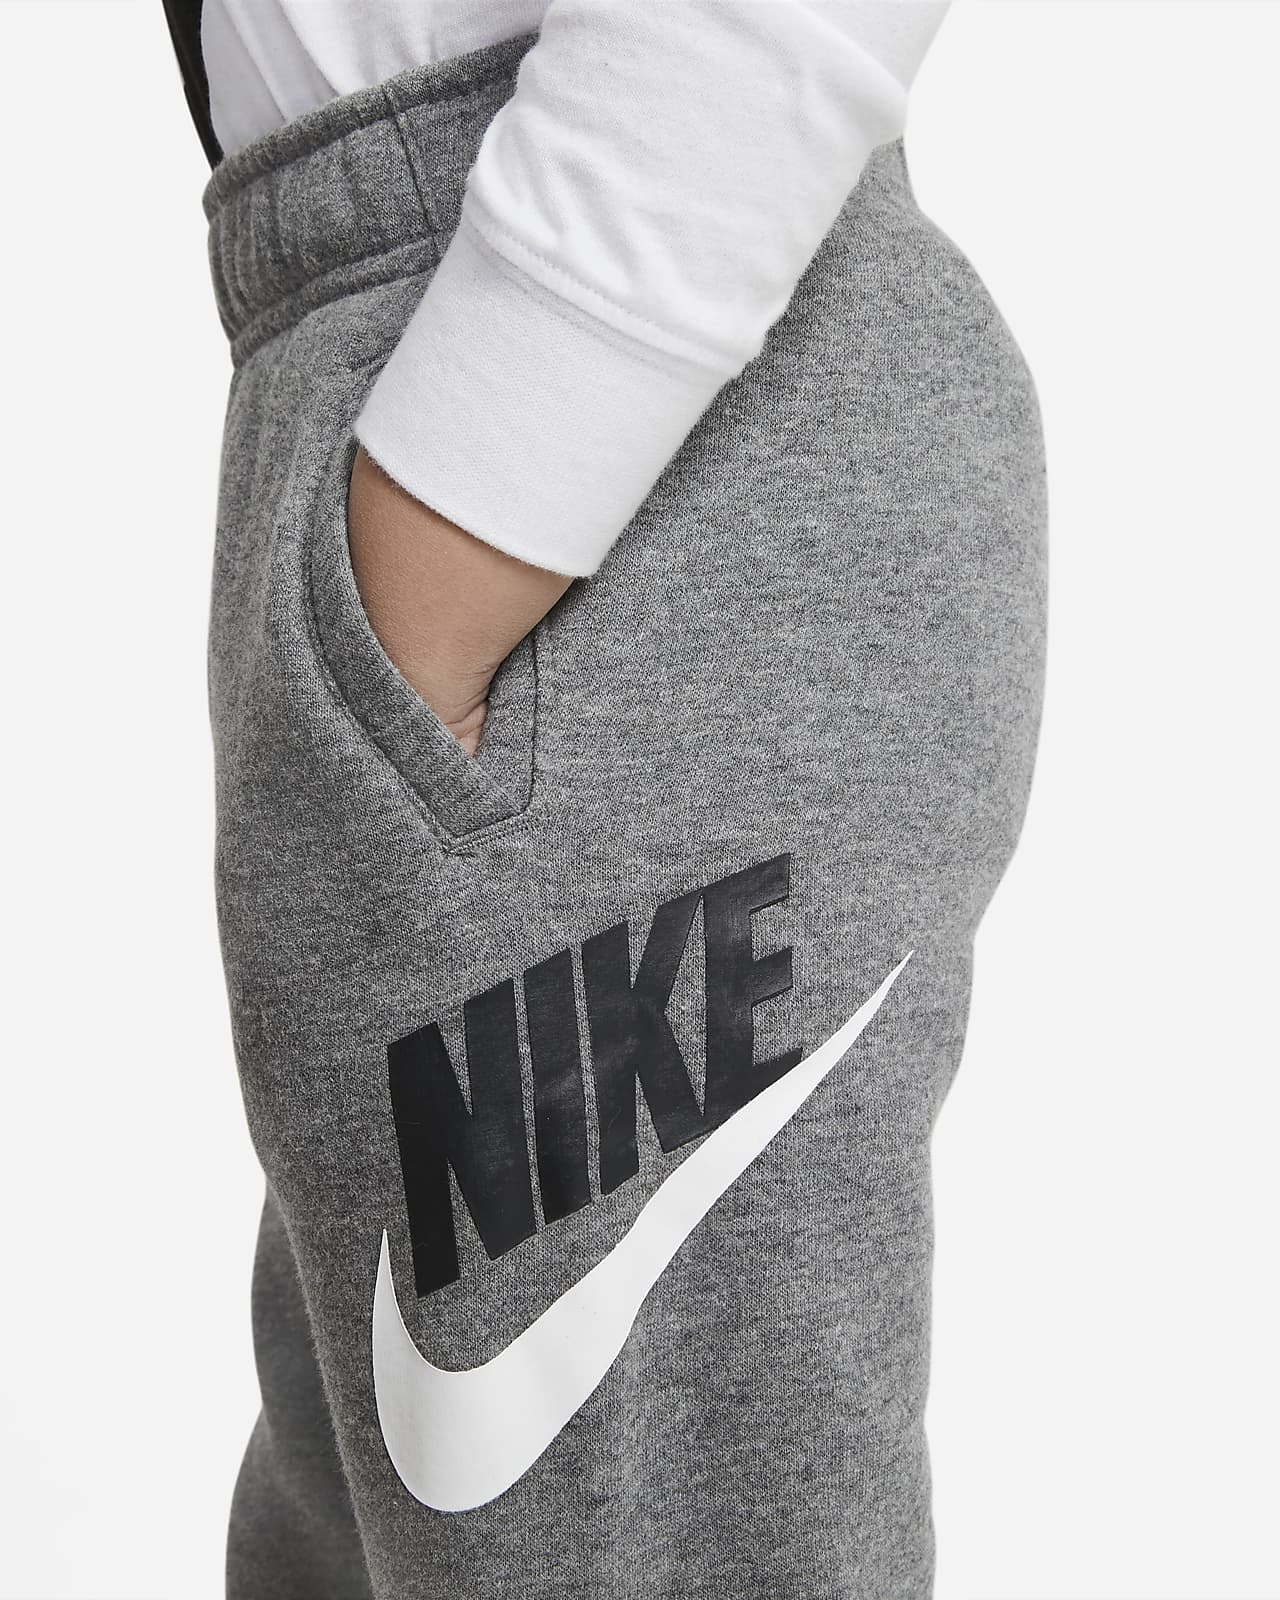 Nike Sportswear Club Fleece Toddler Pants.